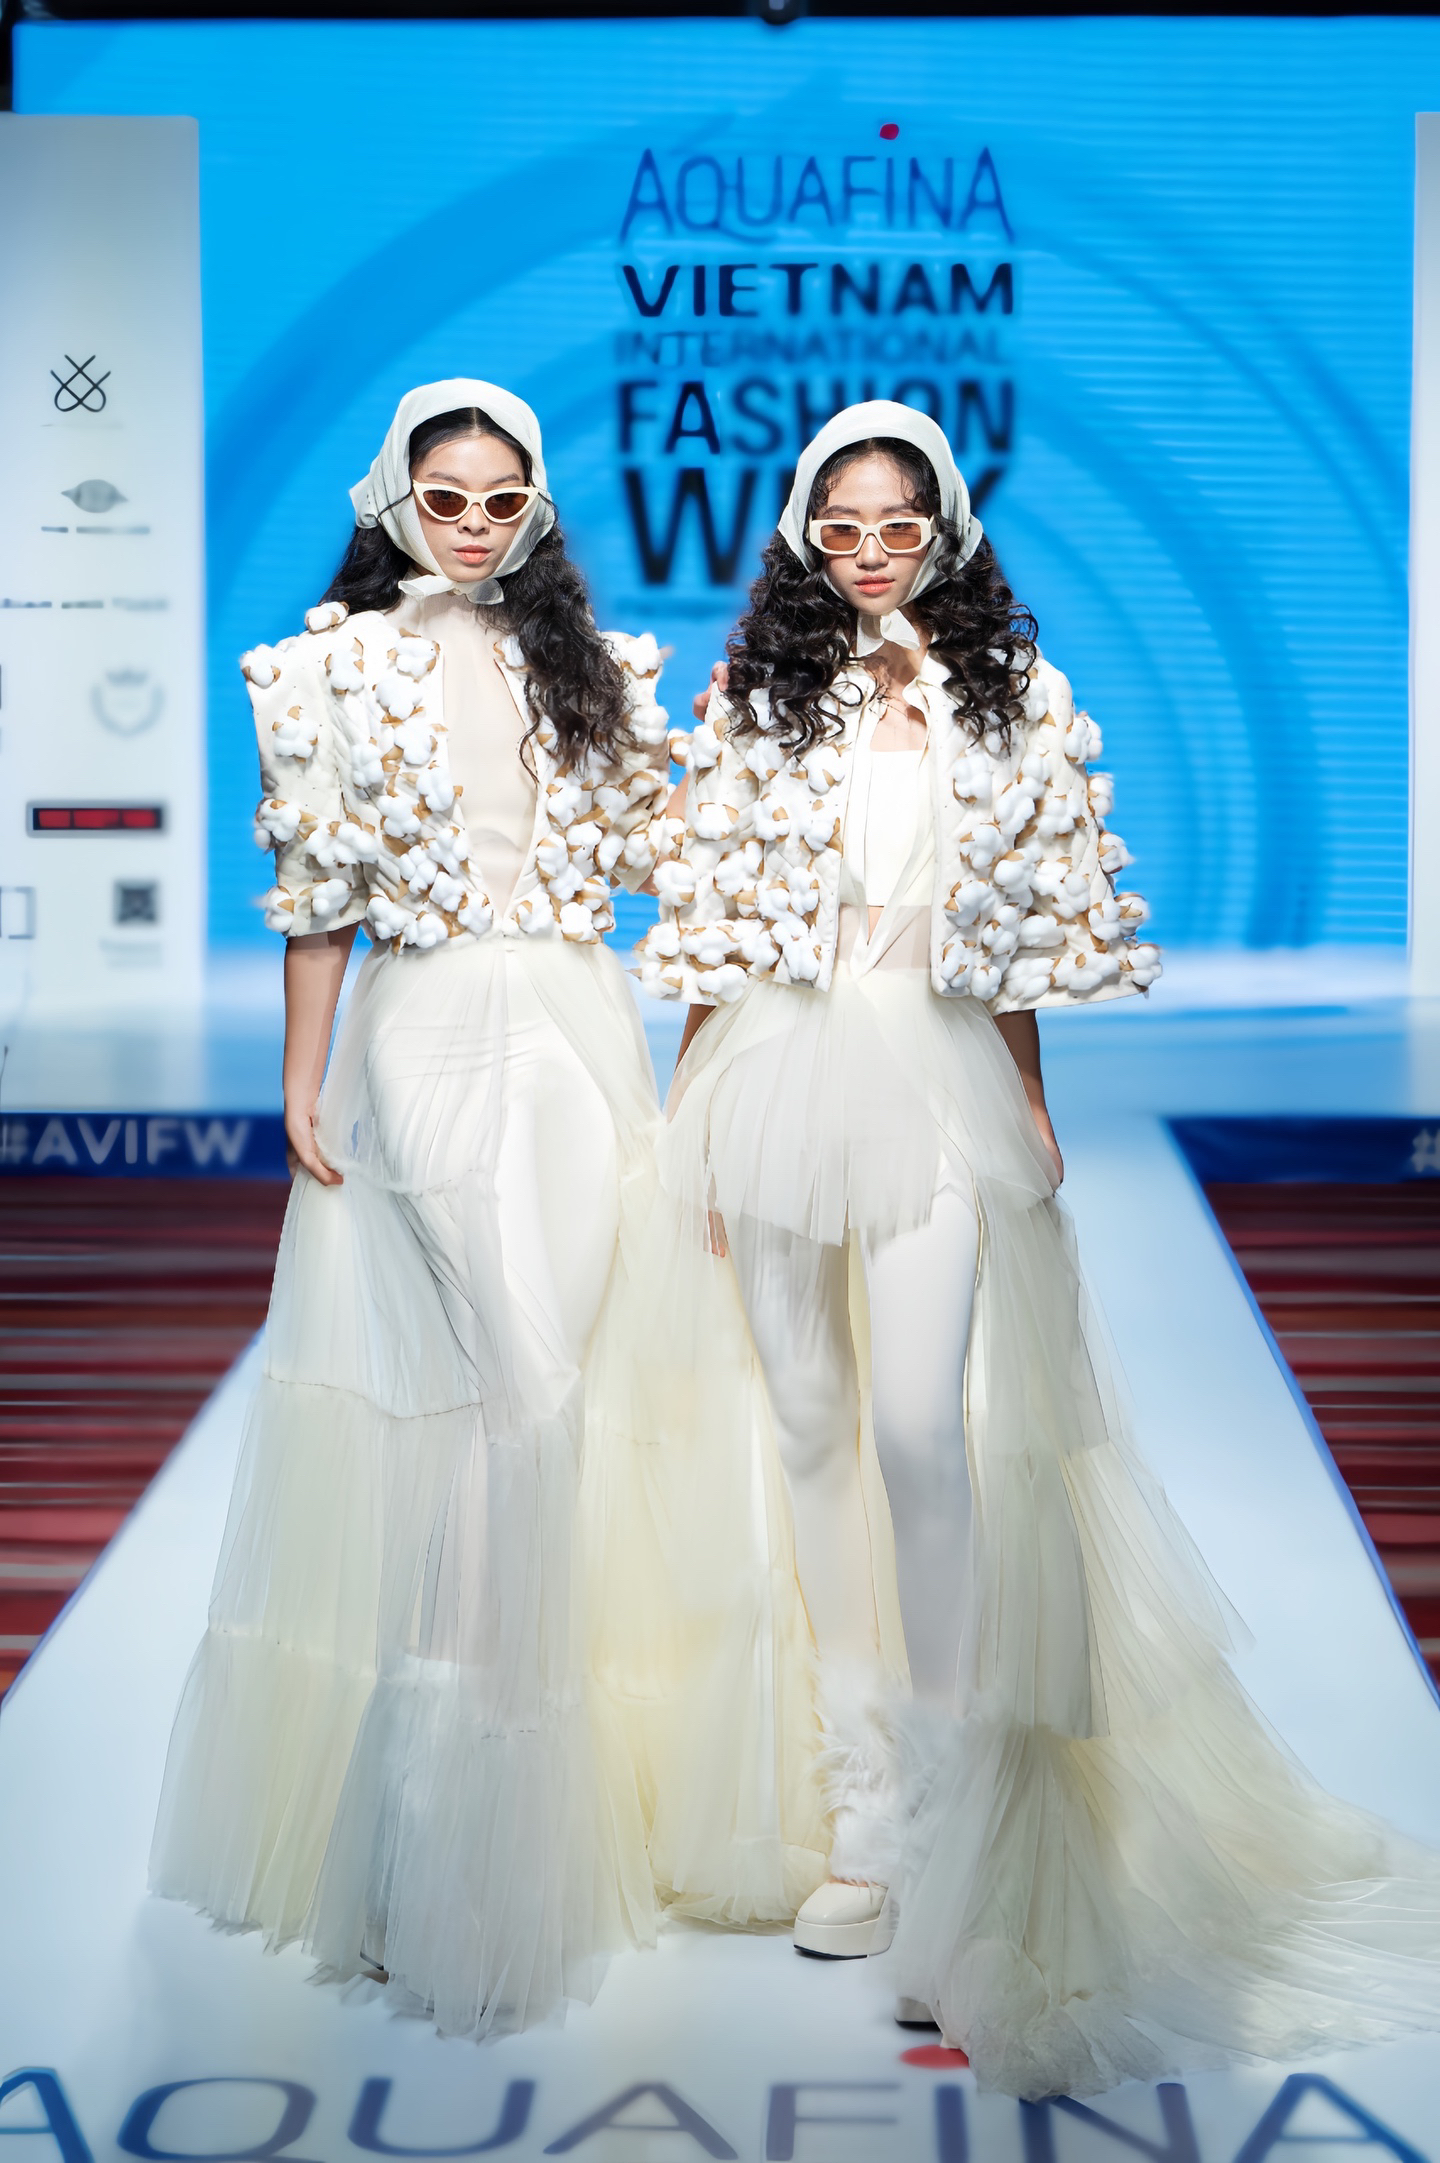 Đặng Minh Anh có sự kết hợp đầy ăn ý cùng người mẫu teen Nguyễn Phương Thảo trong mẫu trang phục của nhà thiết kế Thảo Nguyễn. Ảnh: Nhân vật cung cấp  